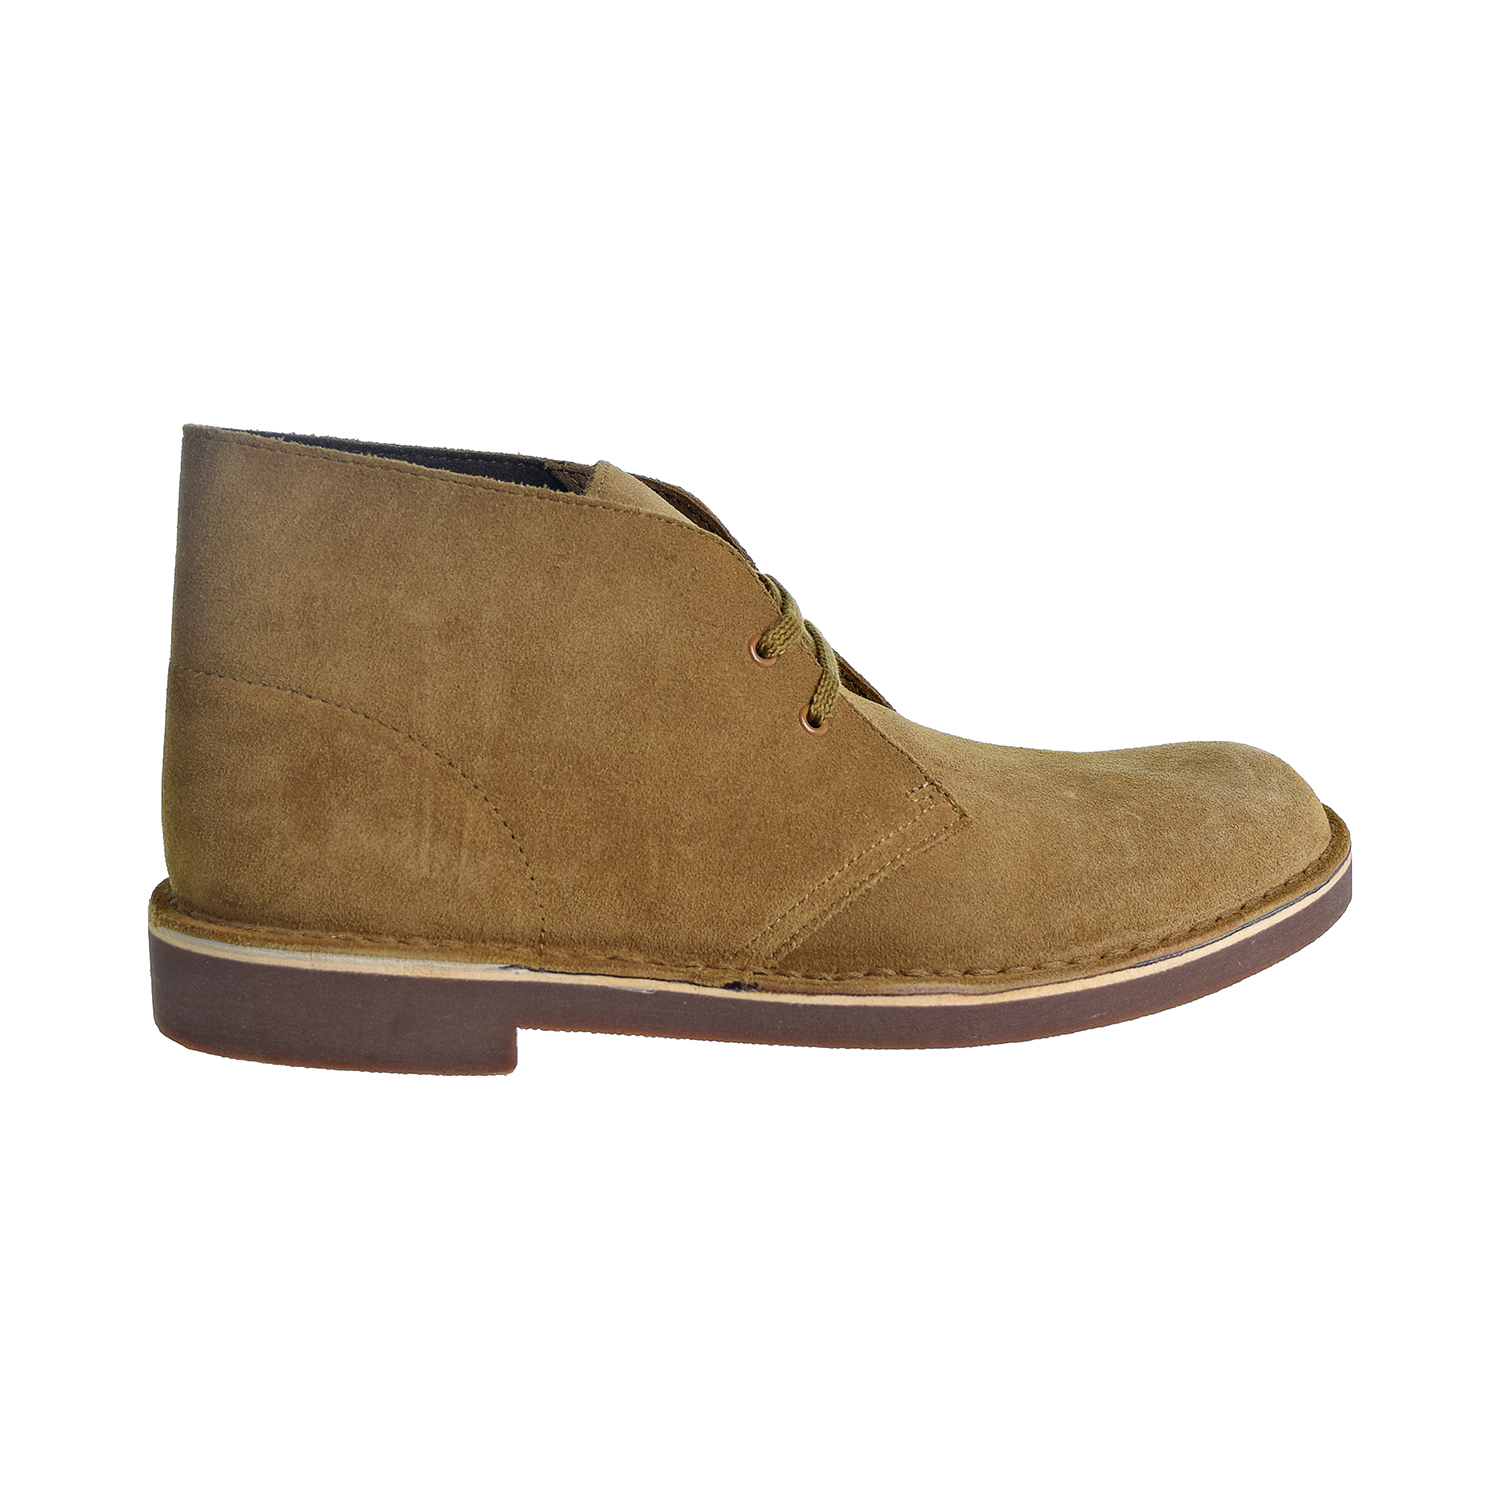 Clarks Bushacre 2 Men's Shoes Wheat 